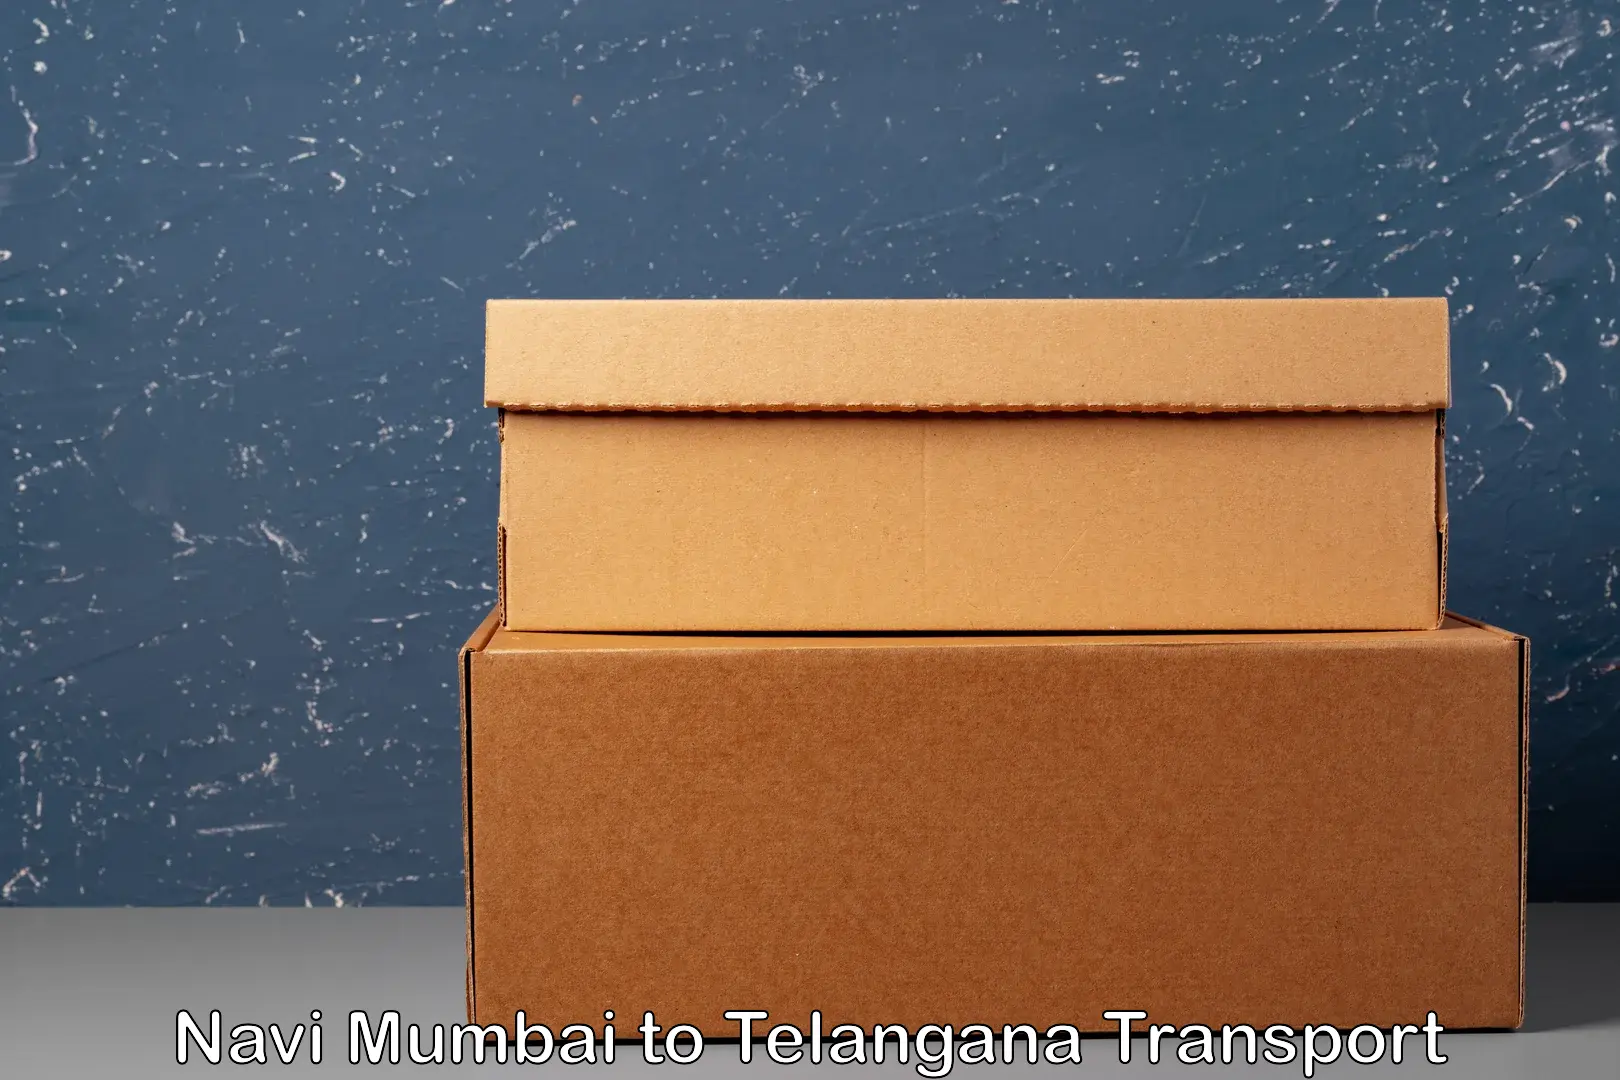 Furniture transport service Navi Mumbai to Secunderabad